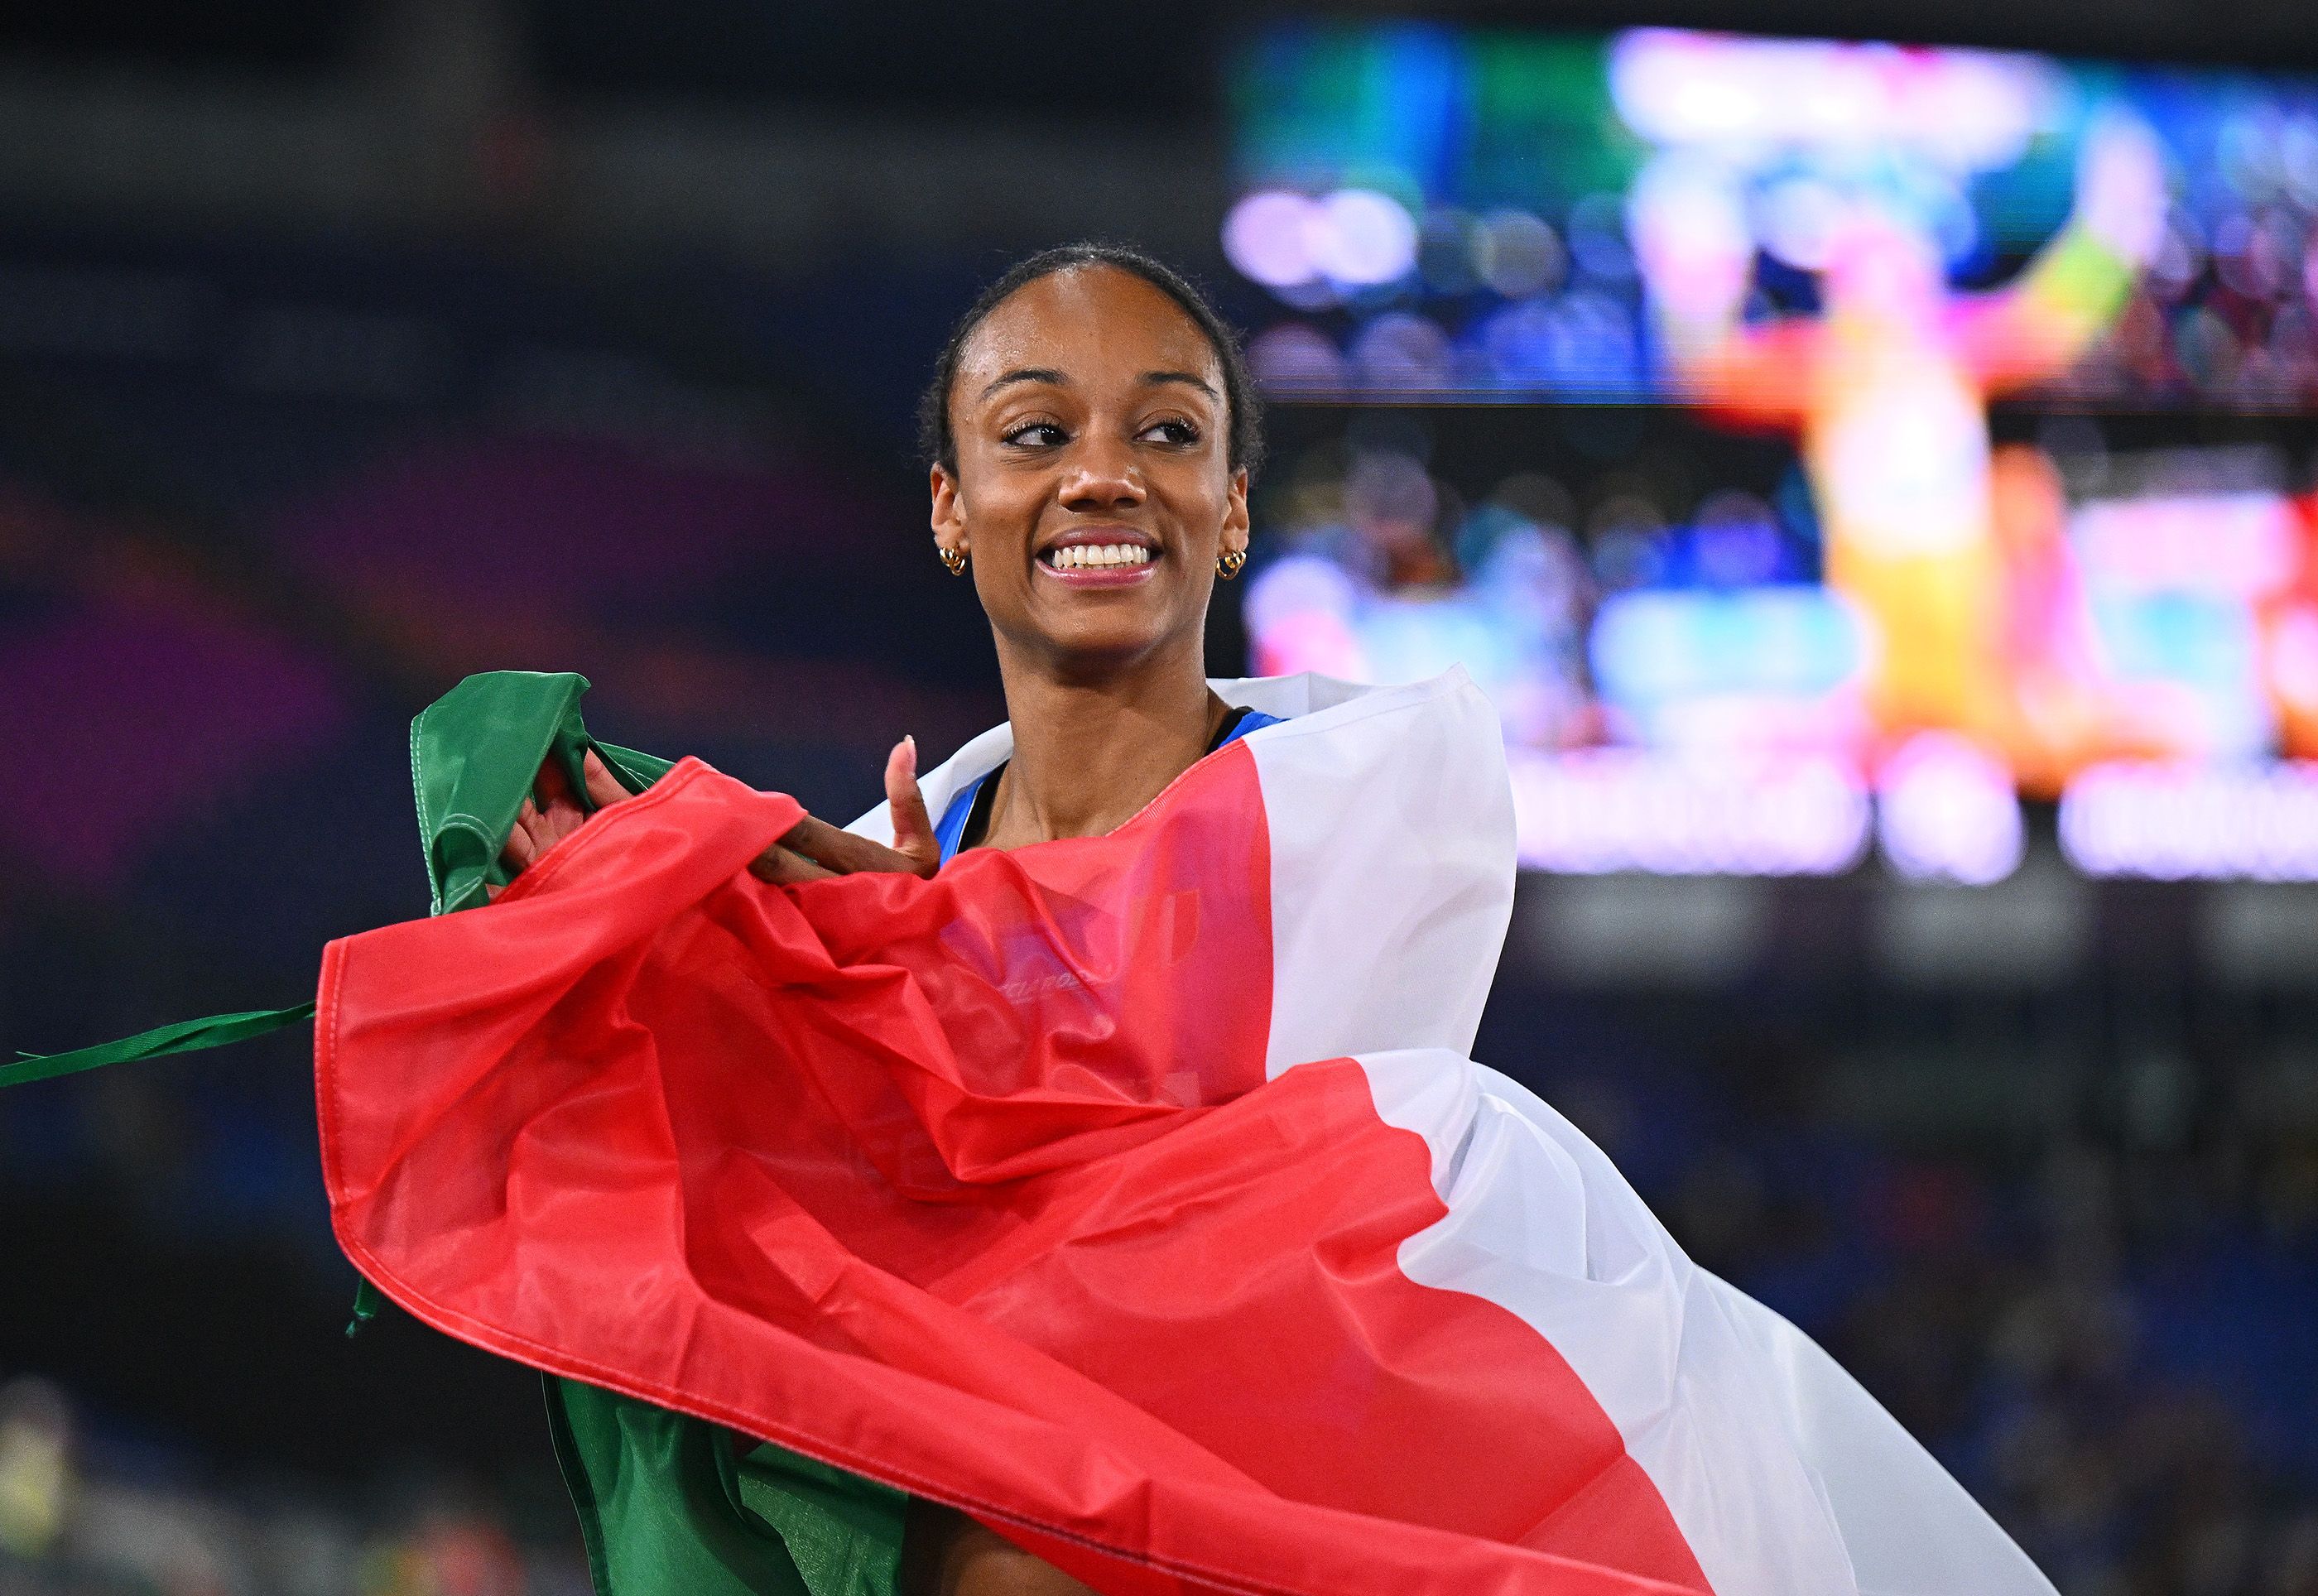 Larissa Iapichino celebrates her European silver medal win in Rome